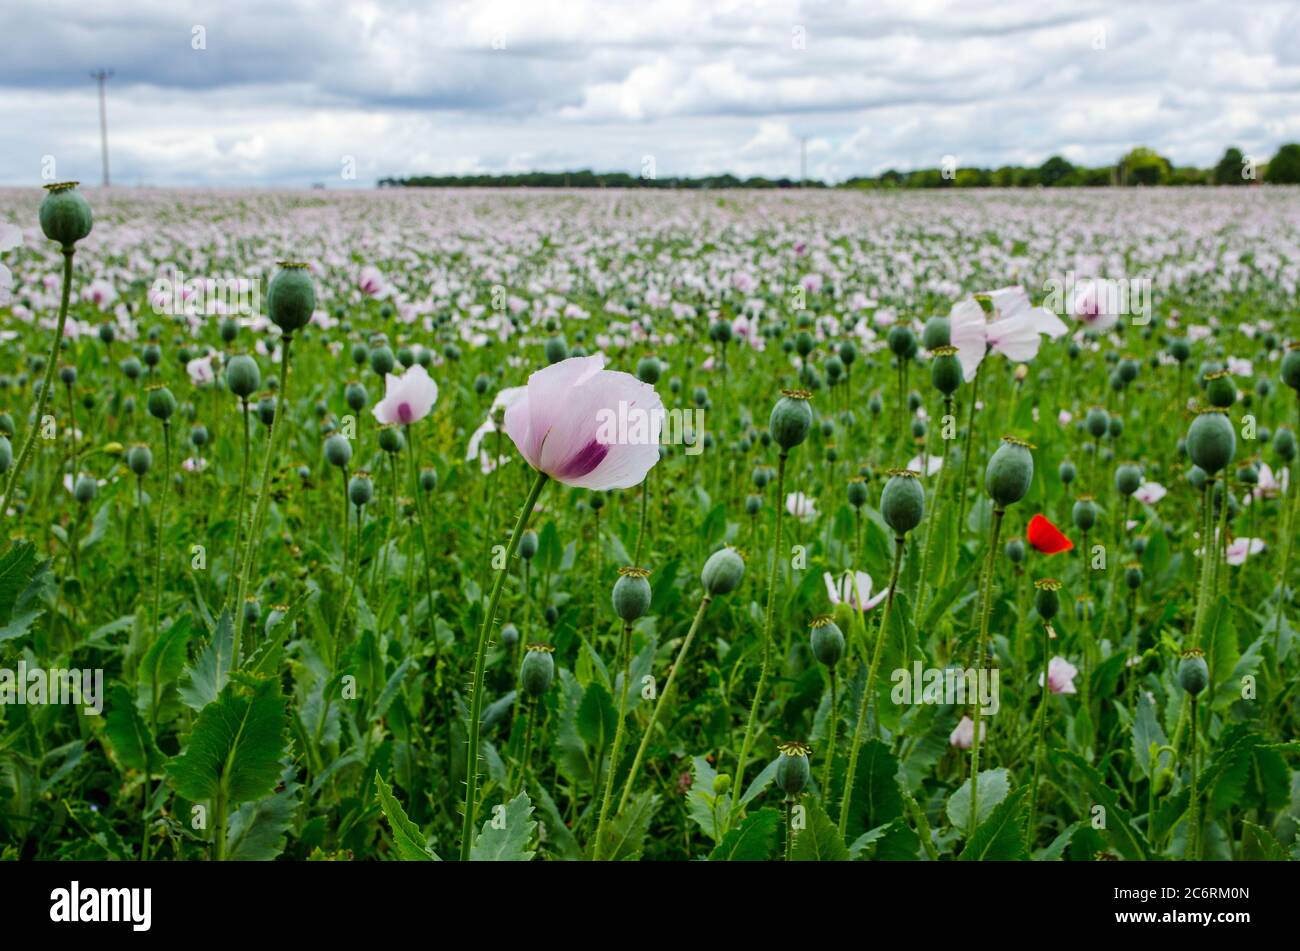 Vue sur le bord d'un champ de pavot à opium, nom latin Papaver somniferum, croissant sur une ferme dans le Hampshire, Royaume-Uni. La culture est utilisée pour produire medicina Banque D'Images